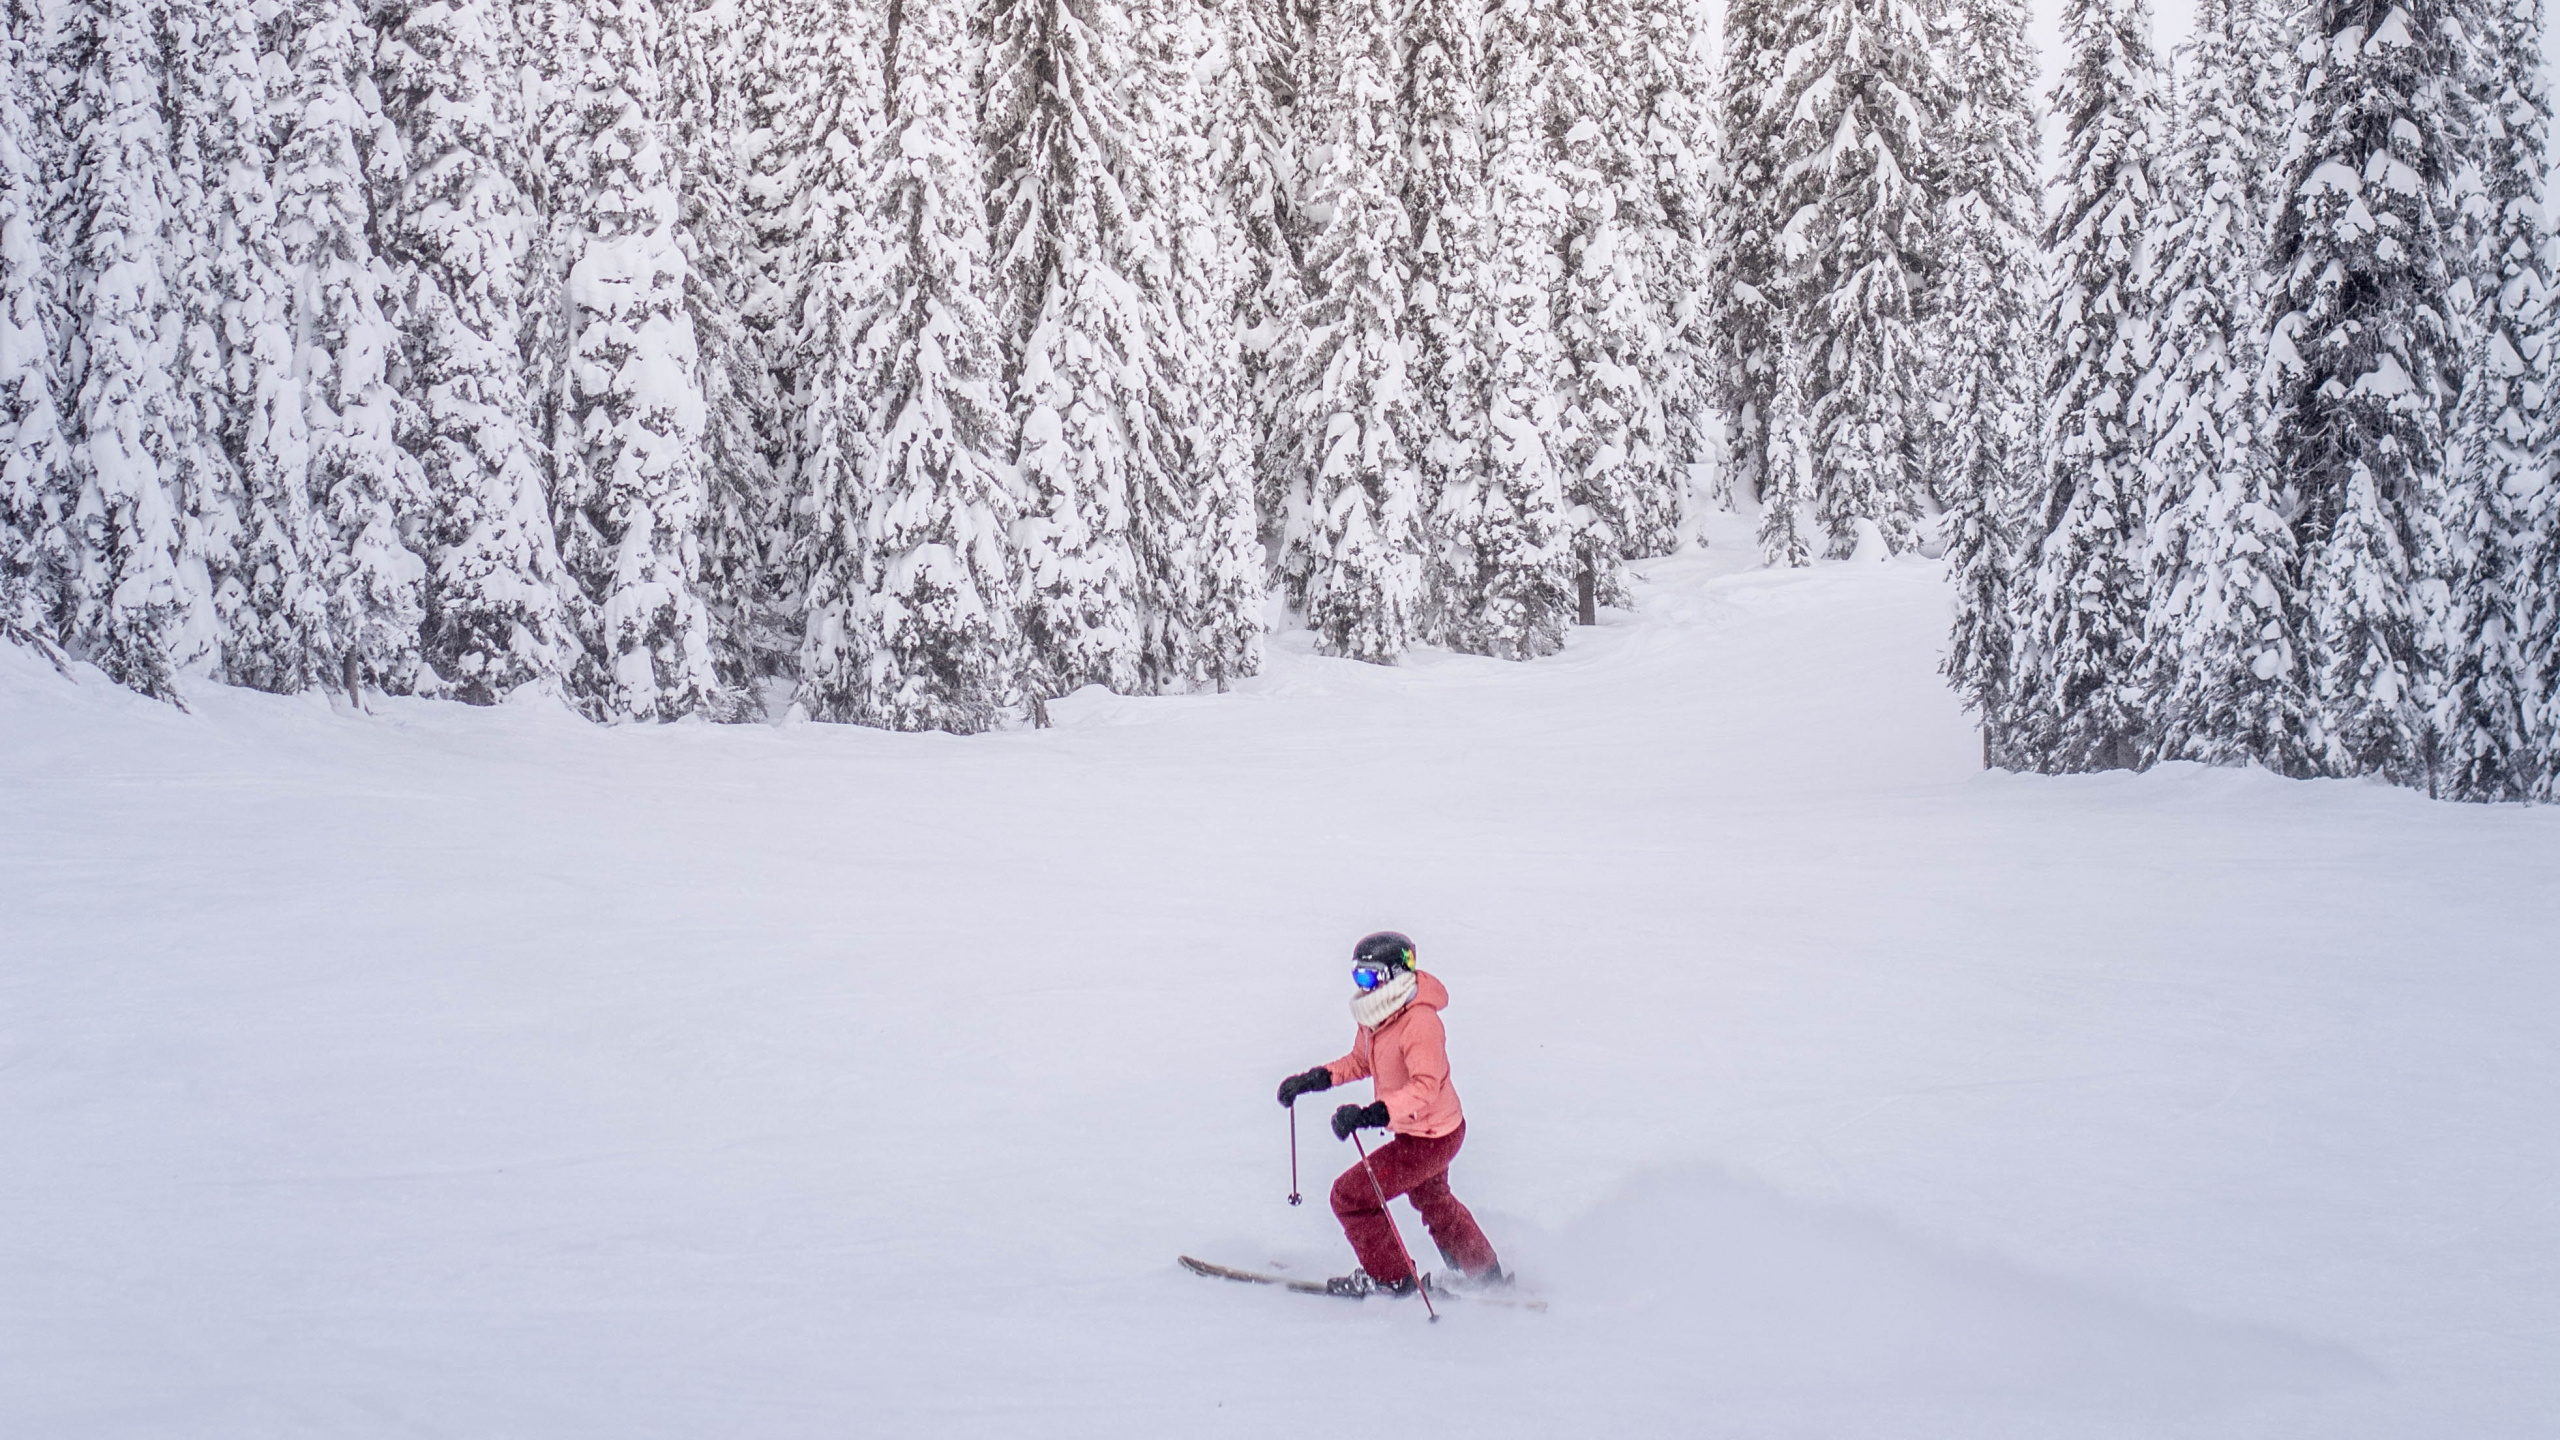 阿斯彭, 高山滑雪, 冬天, 住宿, 白色 壁纸 2560x1440 允许